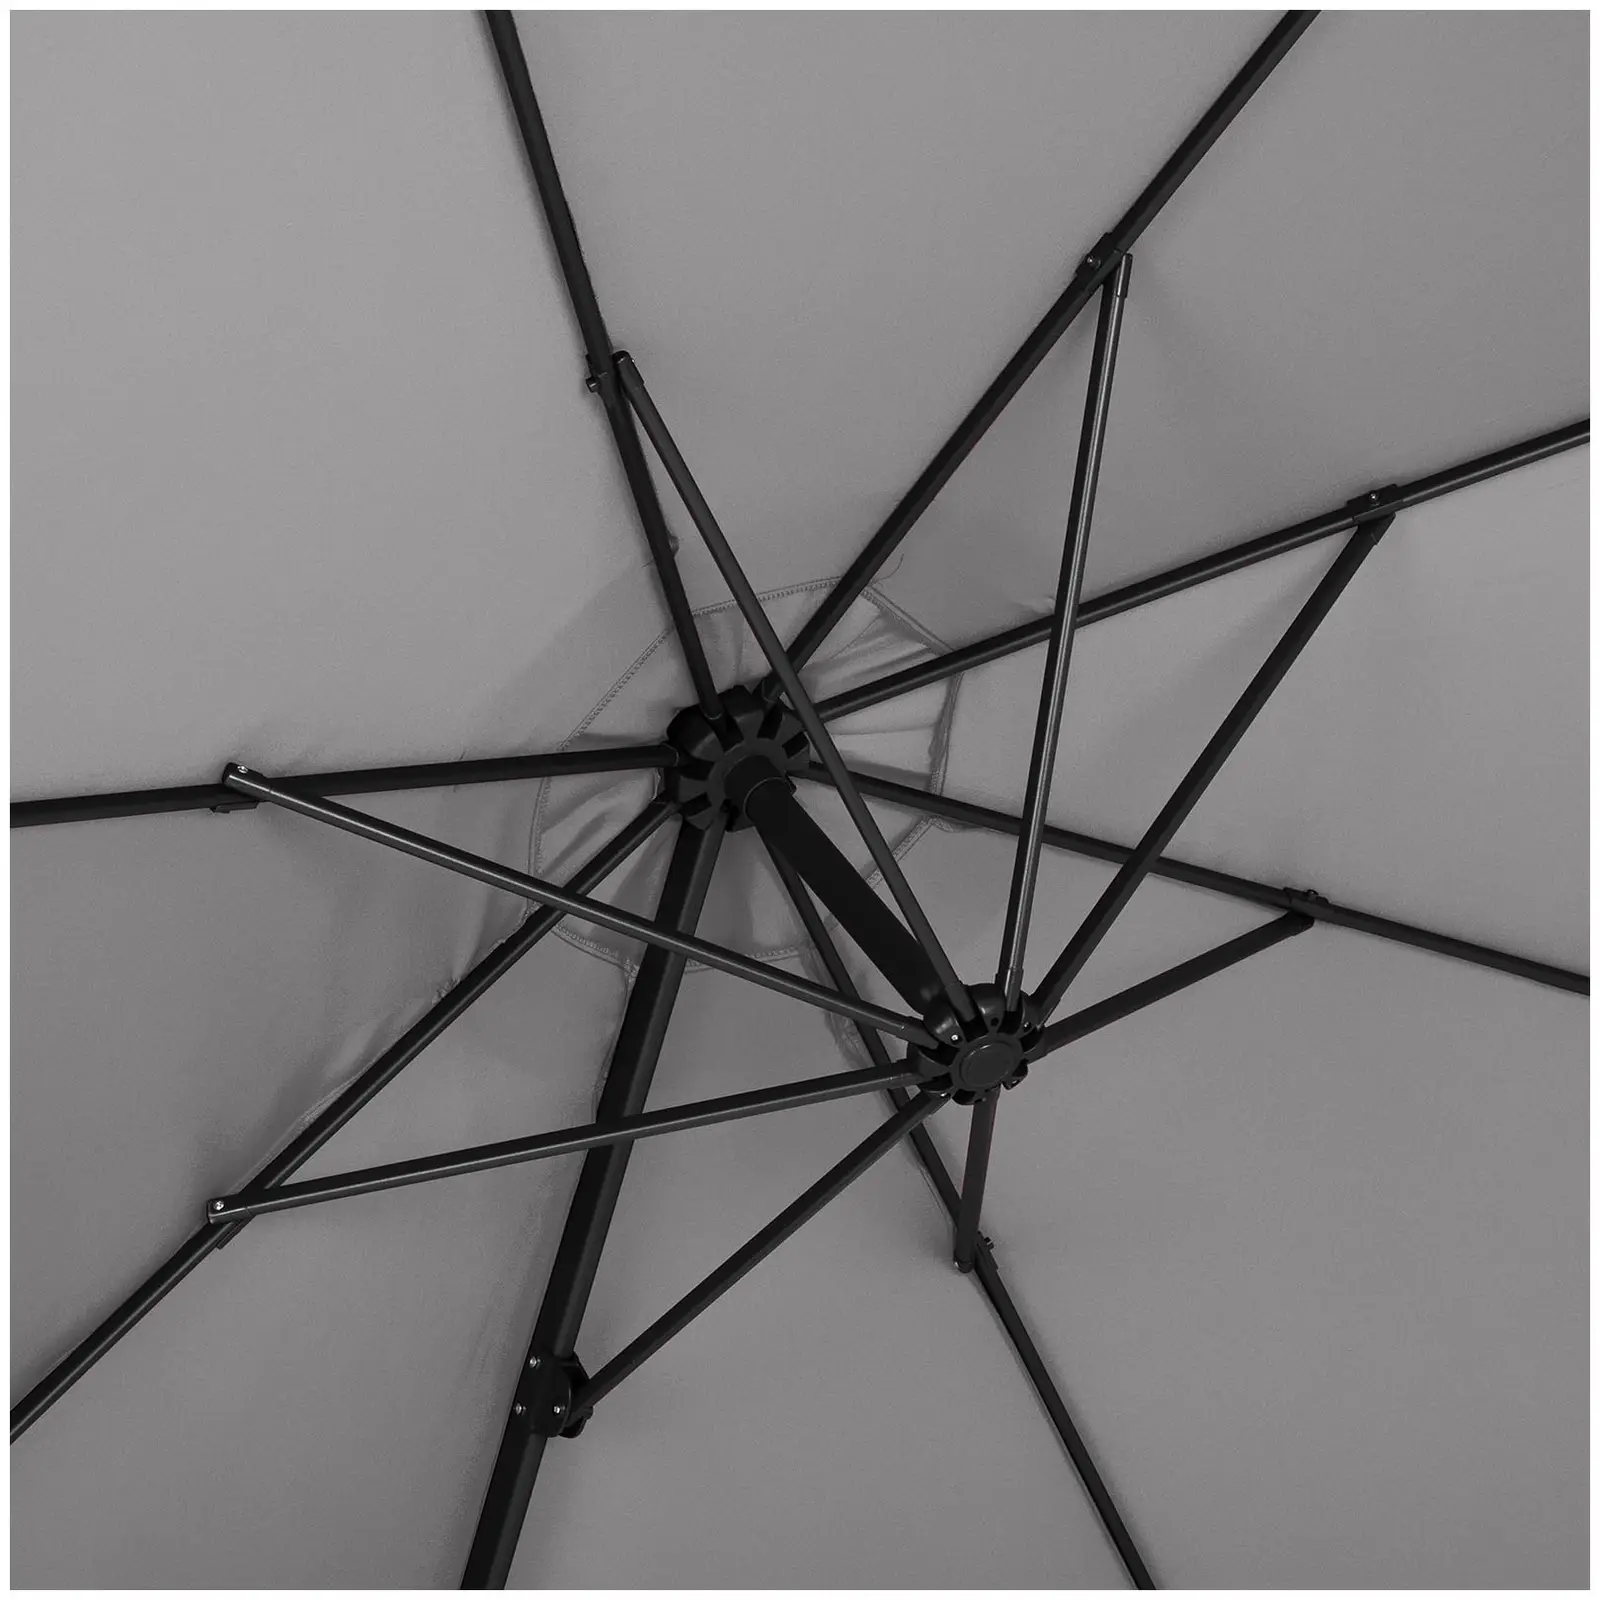 Sombrilla colgante - gris oscuro - redonda - Ø 300 cm - inclinable y giratoria